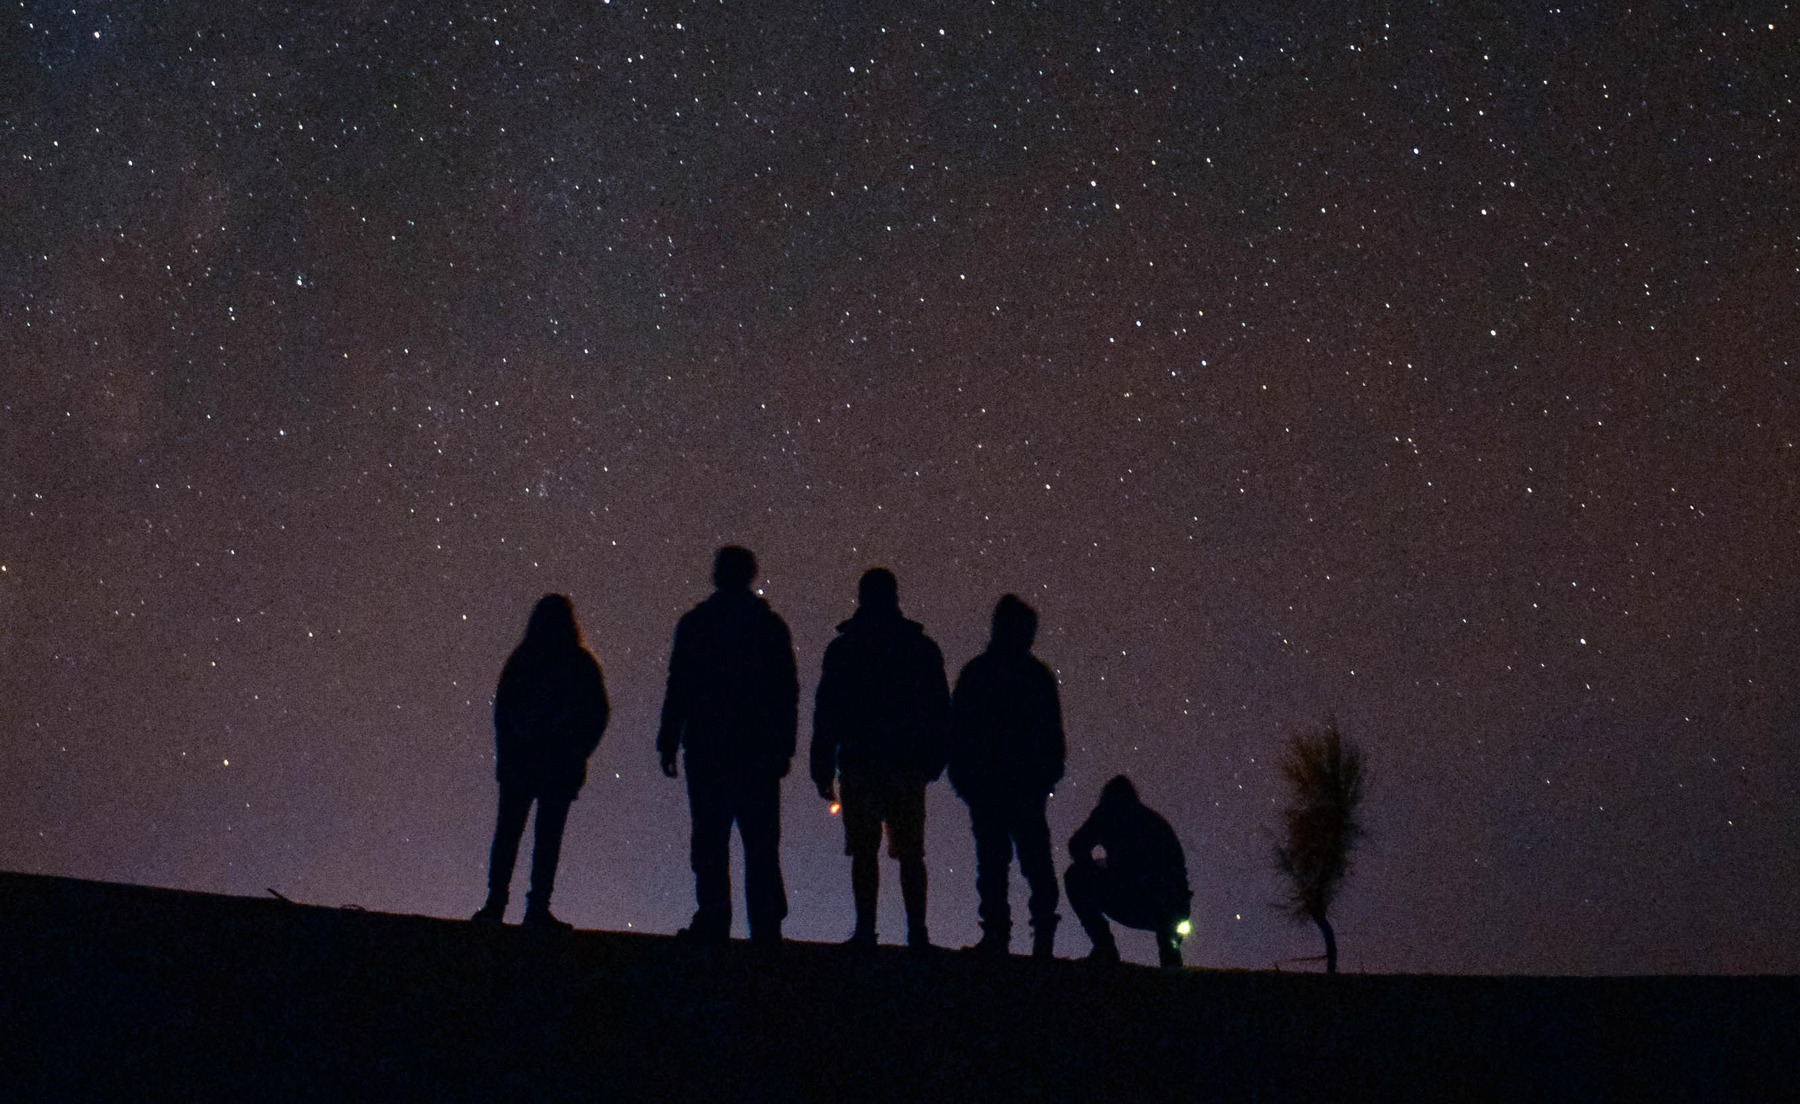 Sechs Menschen stehen auf einem Hügel vor sternenklarem Nachthimmel. Es ist tiefdunkel, man erkennt nur die Himmelskörper und die Silhouetten der Personen.